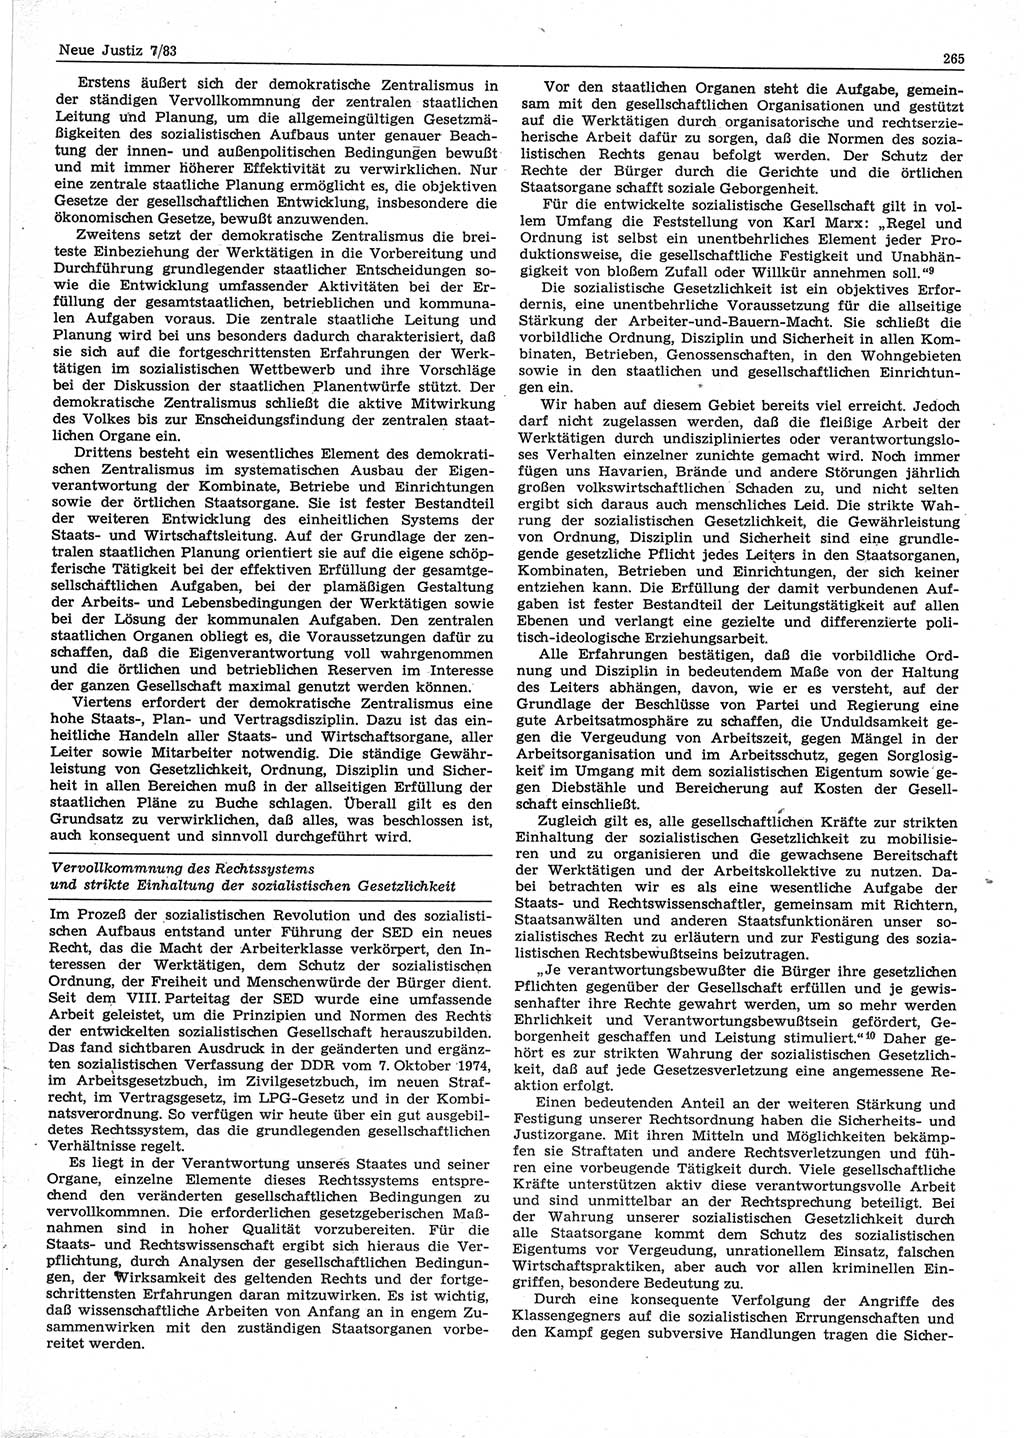 Neue Justiz (NJ), Zeitschrift für sozialistisches Recht und Gesetzlichkeit [Deutsche Demokratische Republik (DDR)], 37. Jahrgang 1983, Seite 265 (NJ DDR 1983, S. 265)